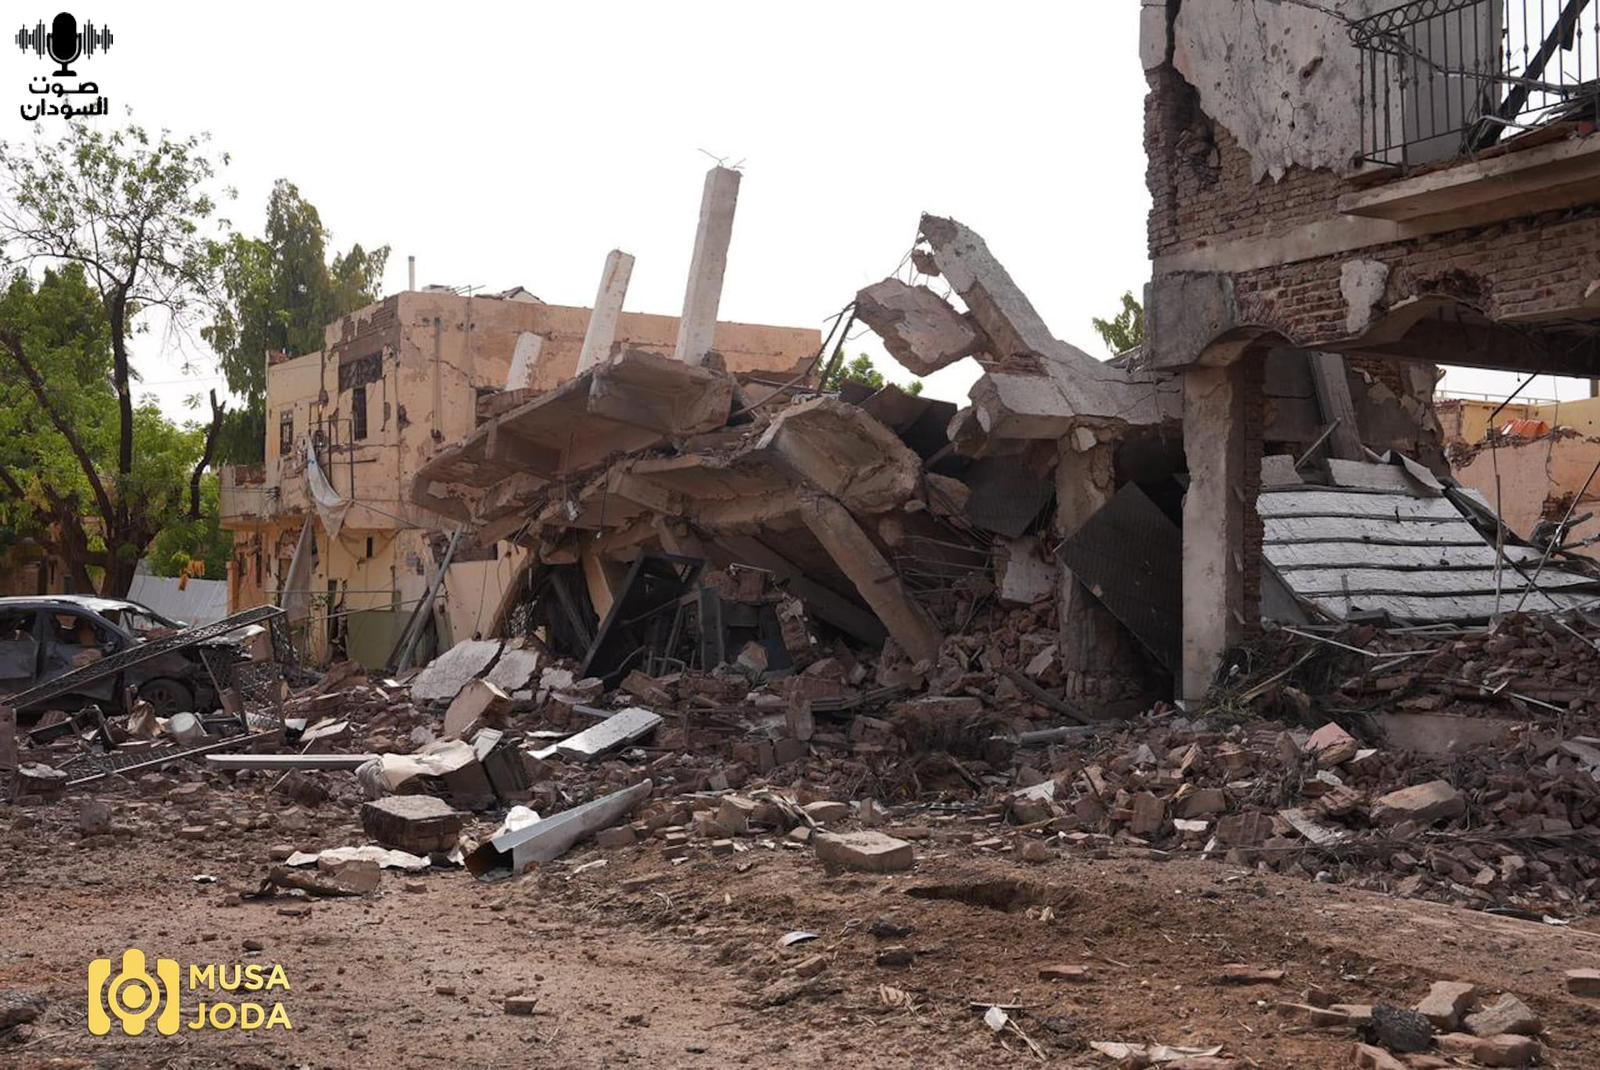 أثار الدمار في الخرطوم- تصوير موسى جودة